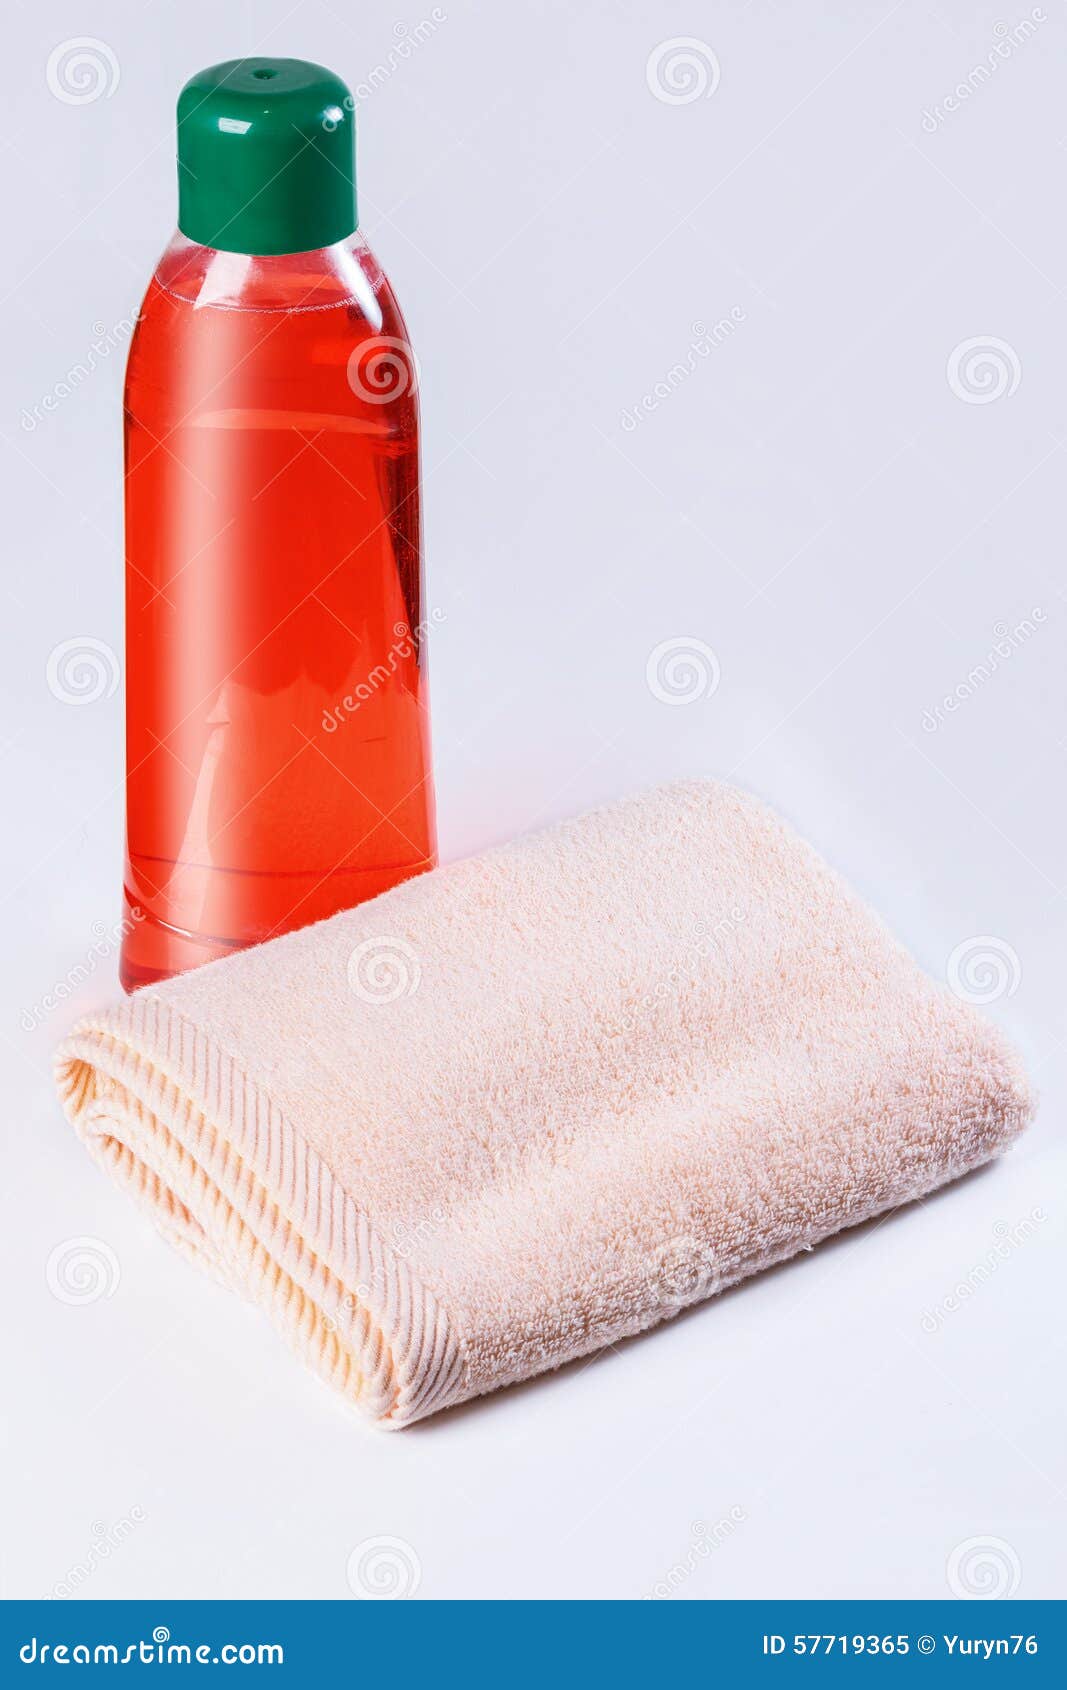 Шампунь полотенце. Шампунь и полотенце. Всякие мылы шампуни полотенчики салфетки. Набор мен полотенце и бытылка красная. Что означает шампунь пакет полотенце.